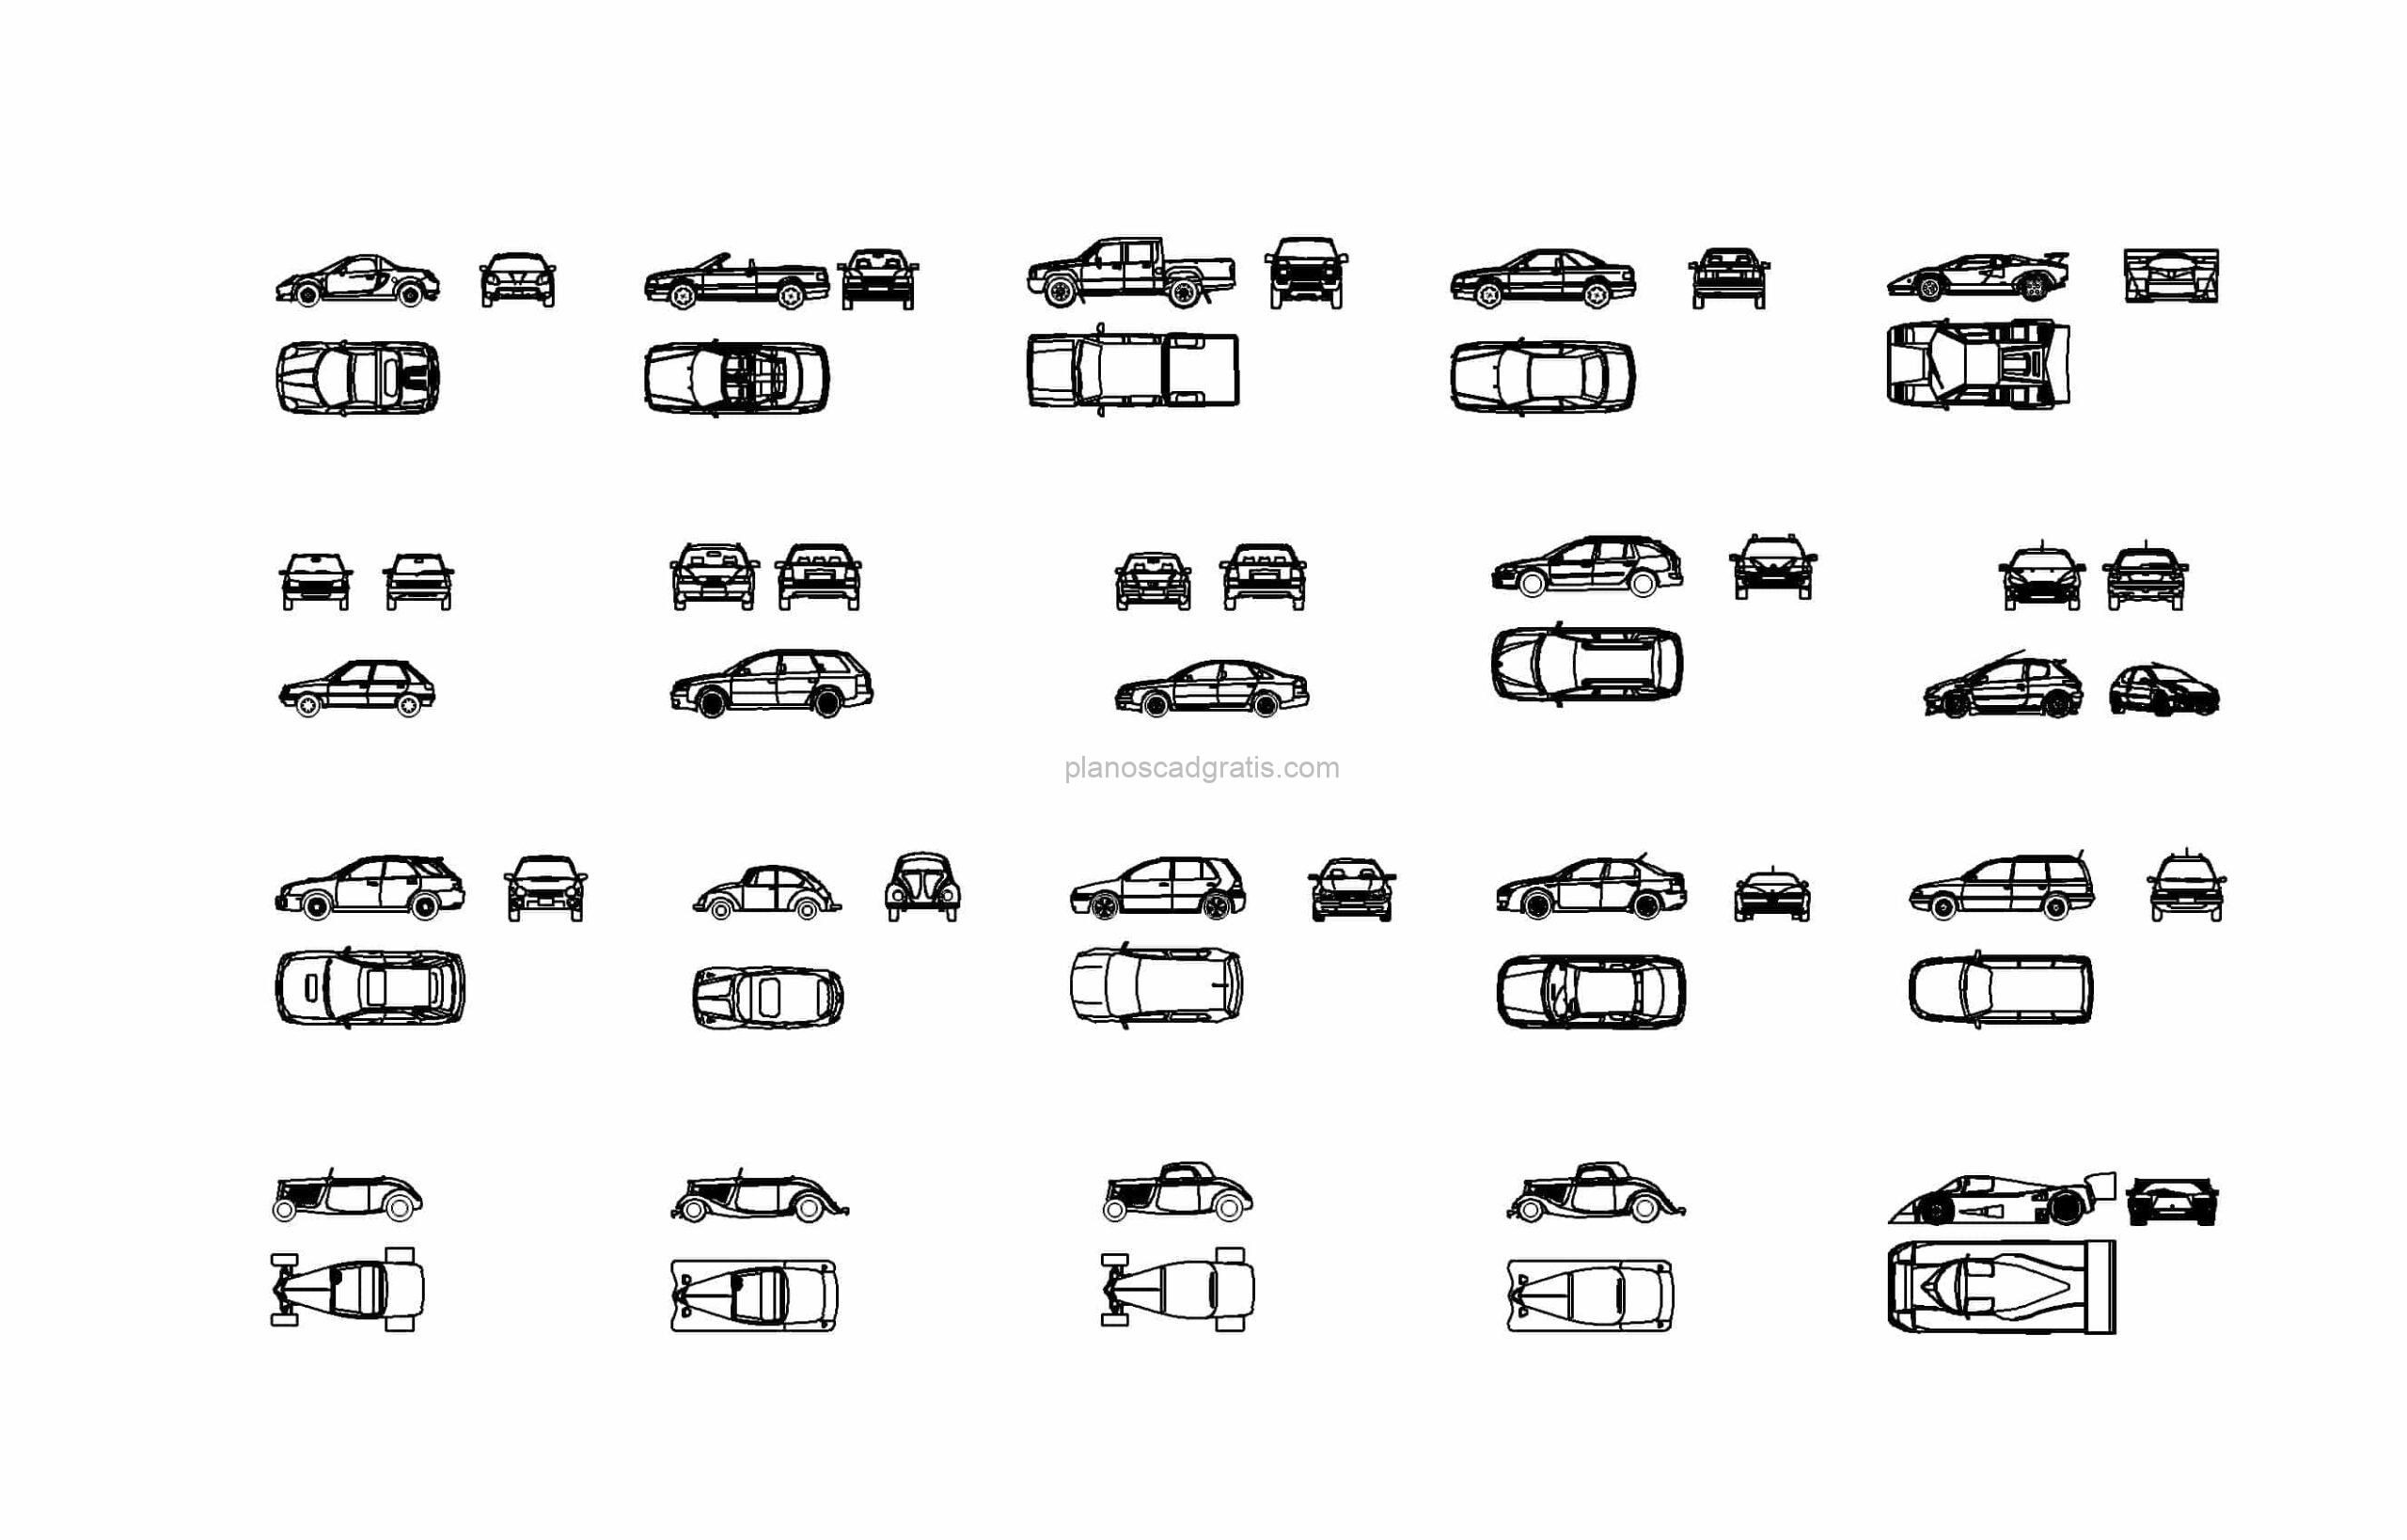 bloque de autocad de coches y vehiculos, dibujo 2d, vistas en planta y elevación en formato dwg para descarga gratis